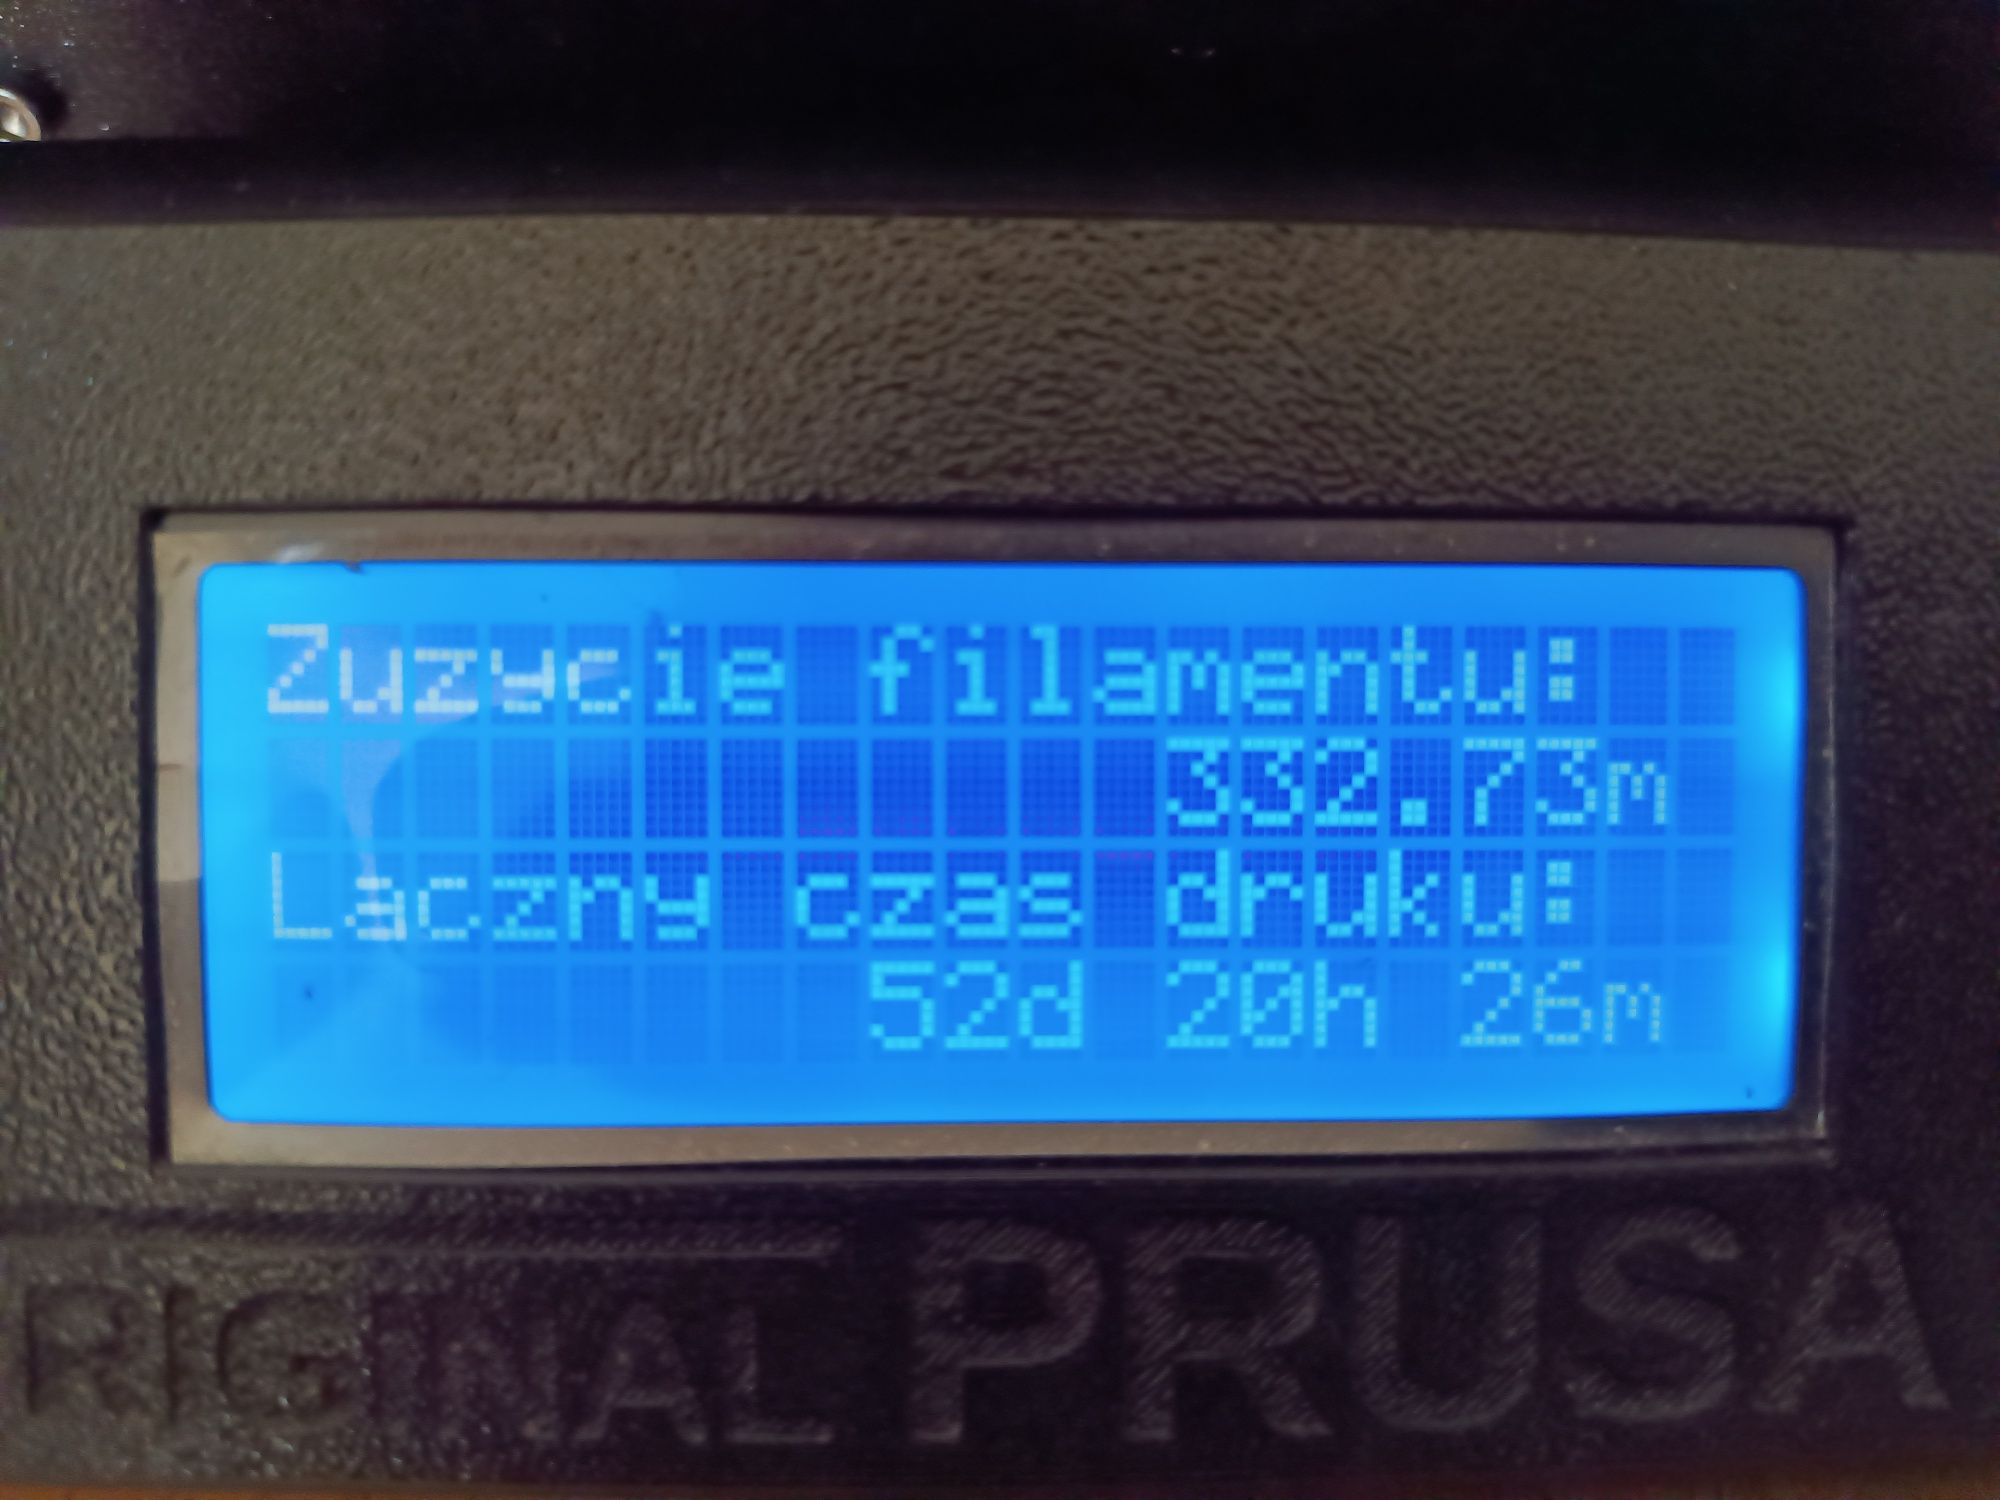 Oryginalna drukarka 3D Prusa i3 MK3S